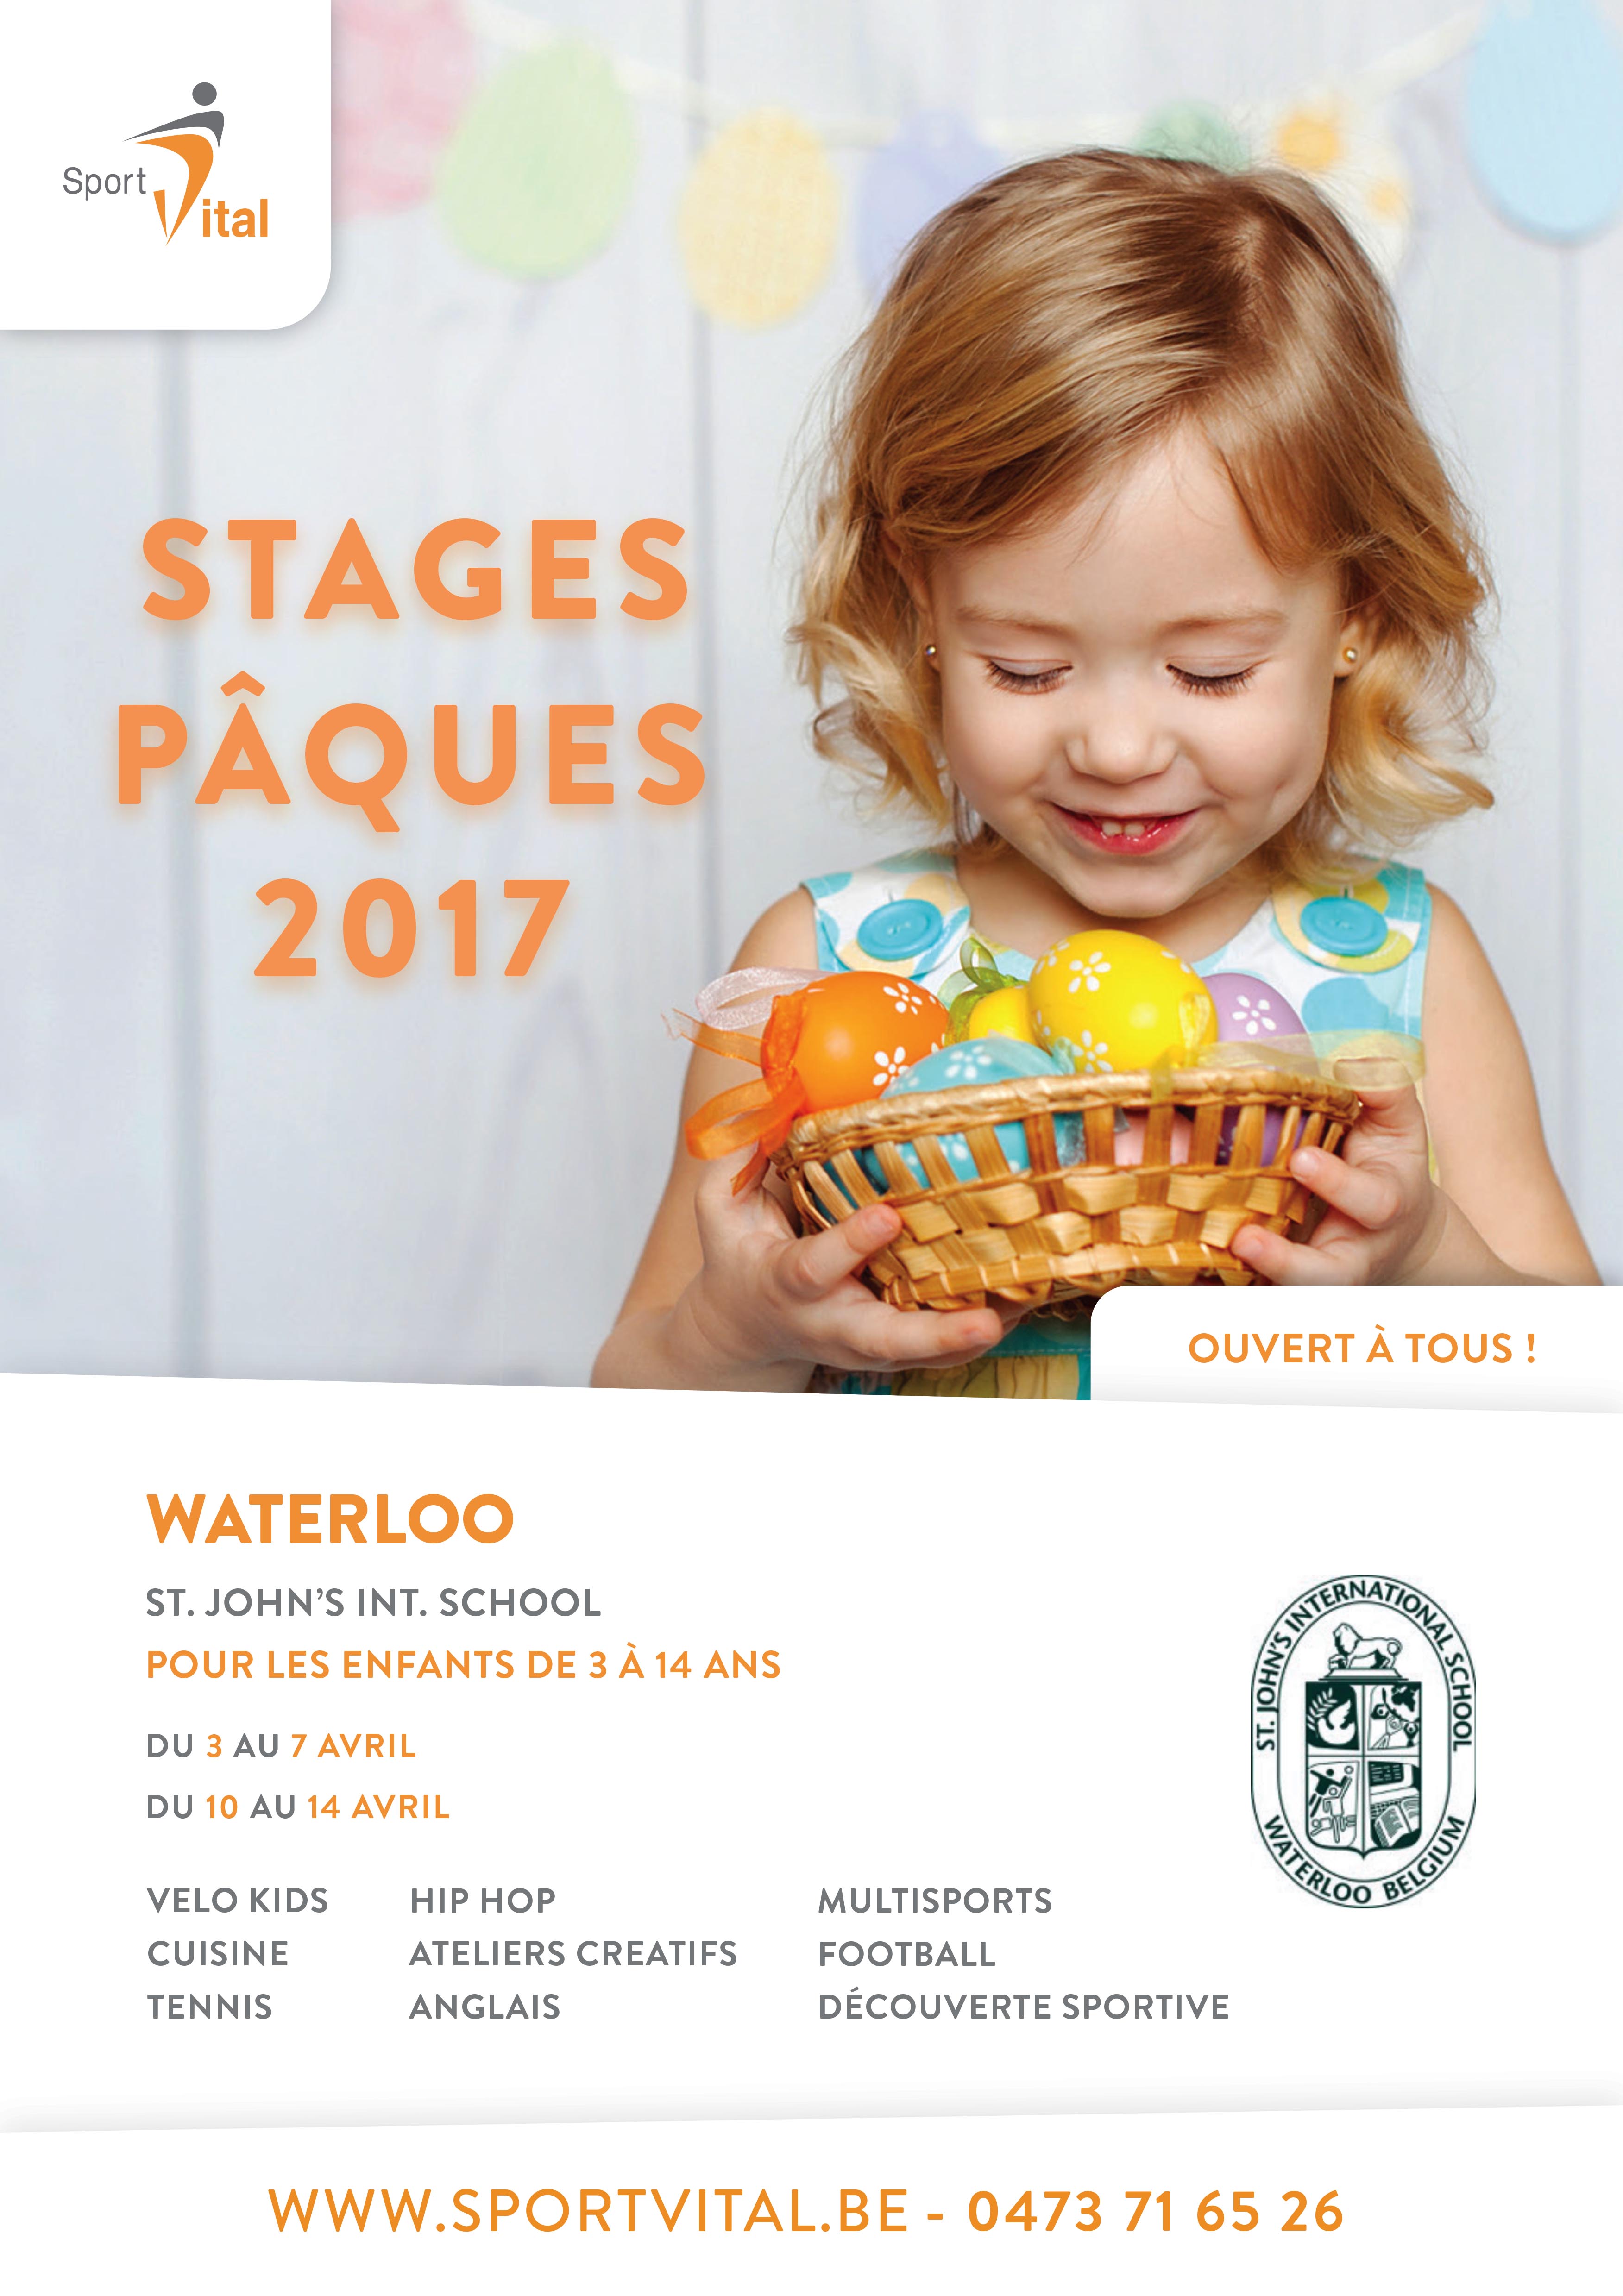 Stages pour enfants à Waterloo, Pâques 2017 : Ouvert à tous !